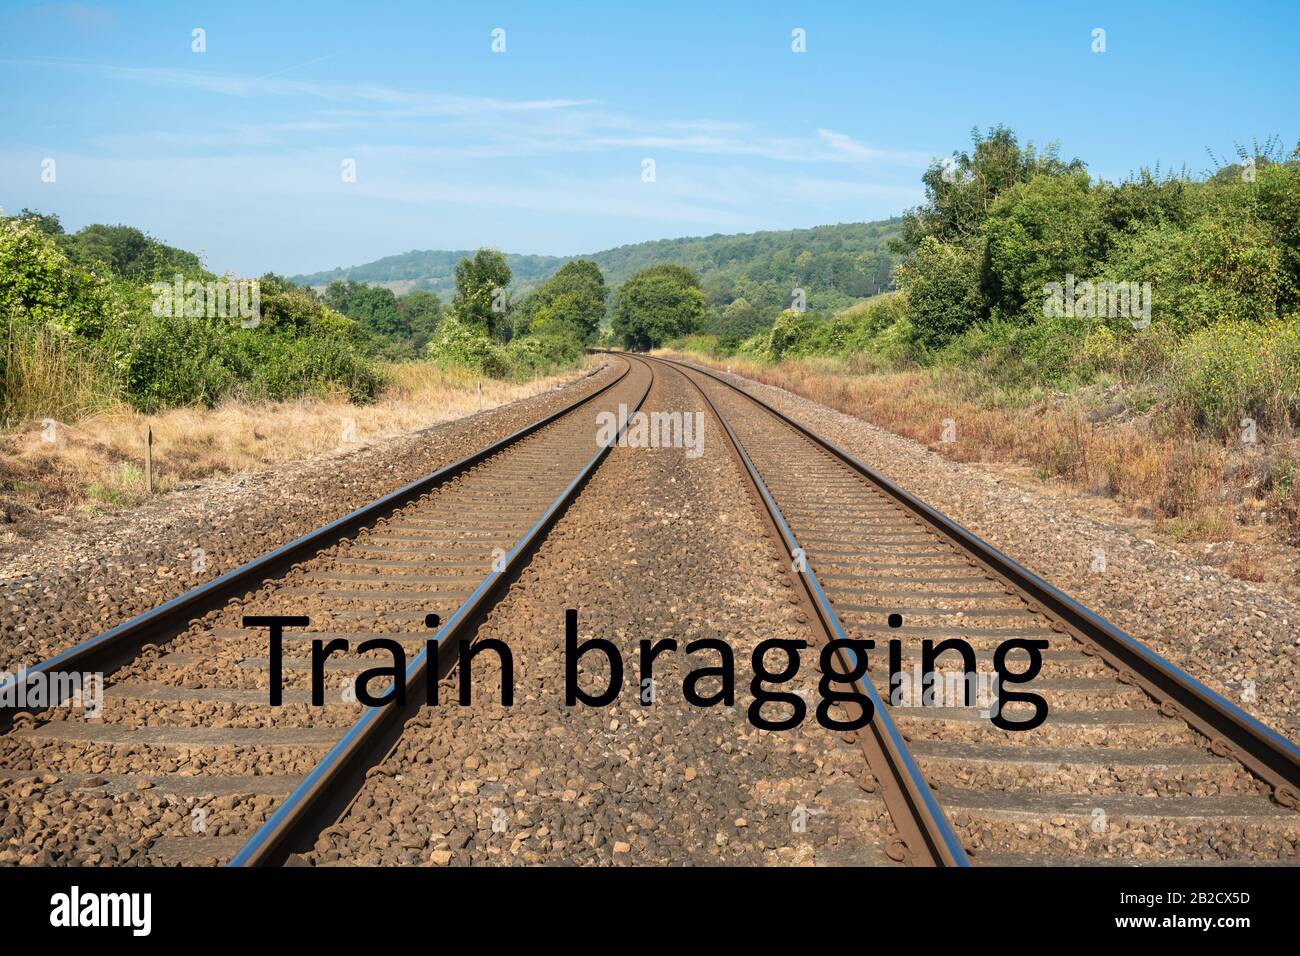 Immagine del concetto di formazione di bragging - utilizzo di treni invece di volare per ridurre l'ingombro di carbonio Foto Stock